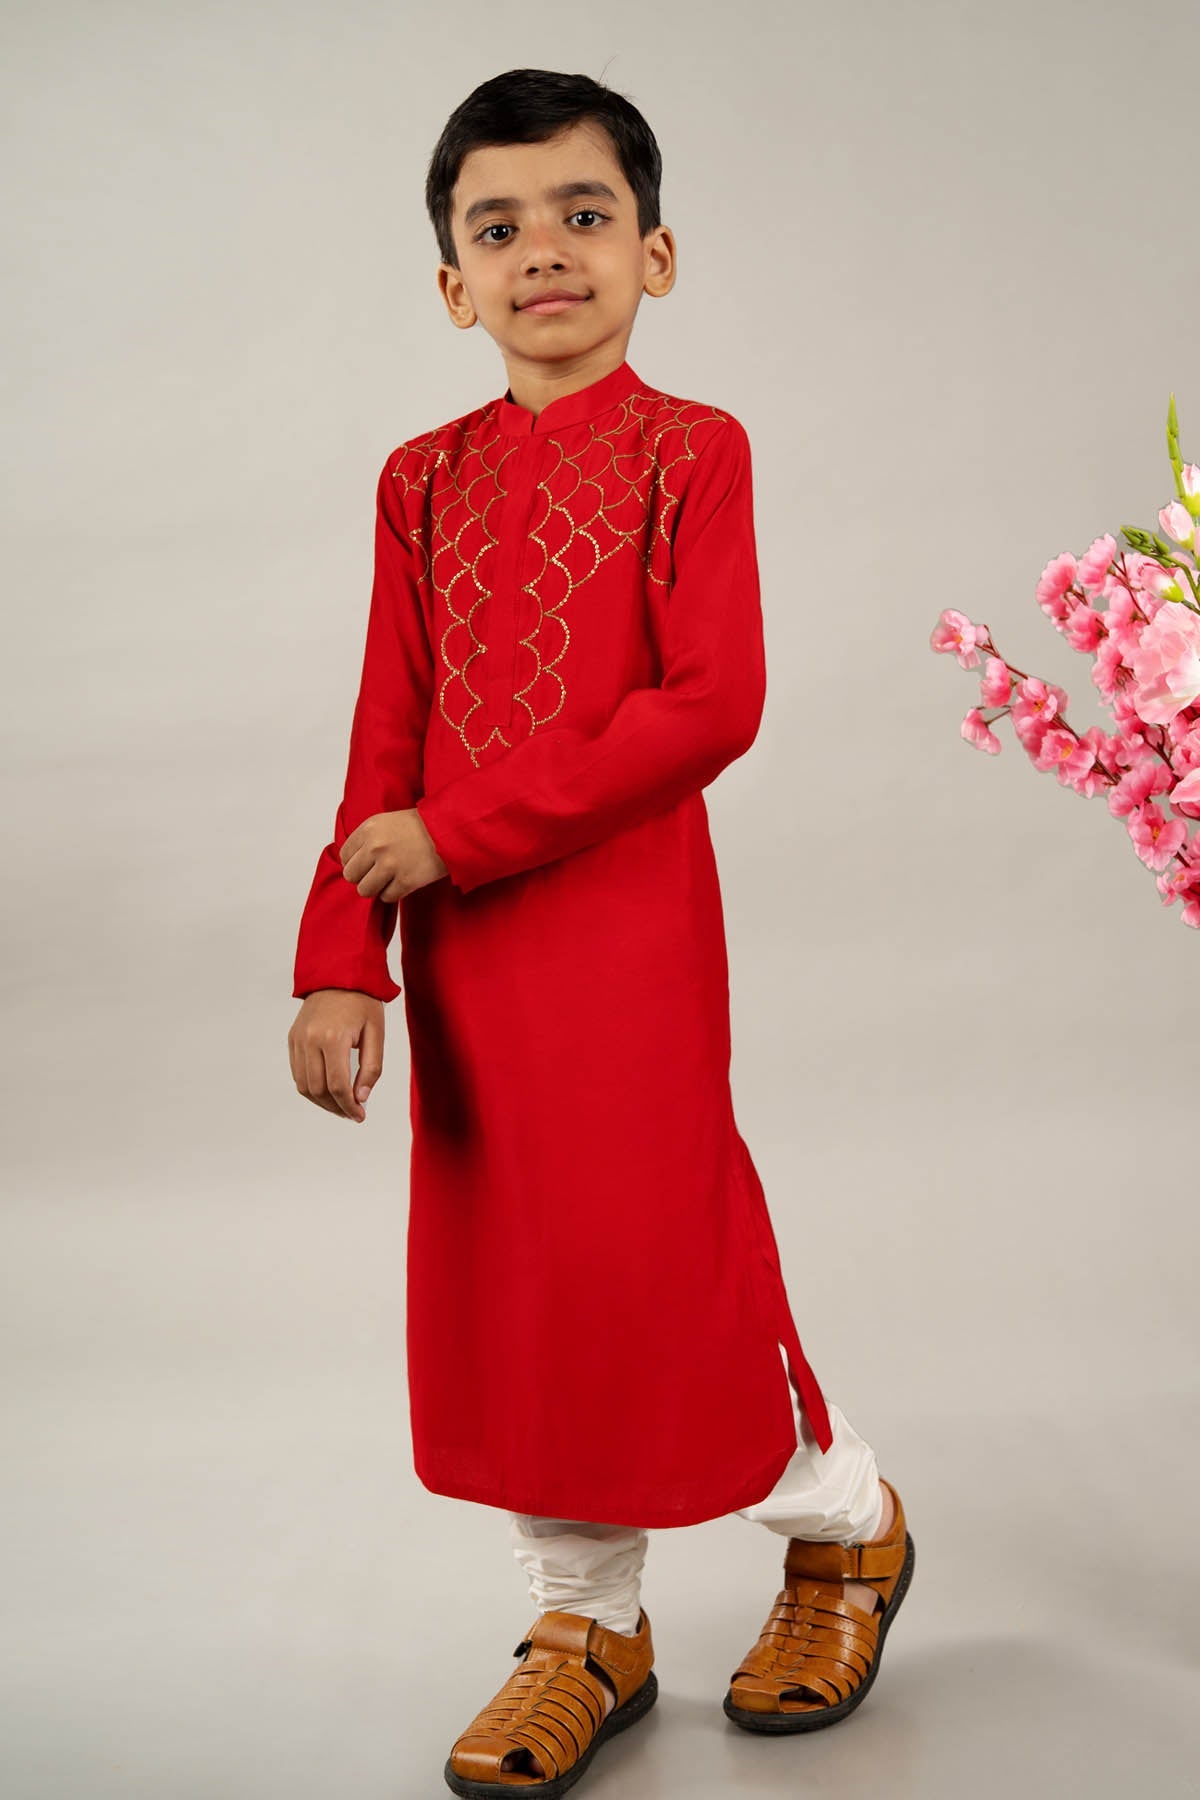 Designer Little Brats Red Sequins Kurta Set For Kids Available online at ScrollnShops